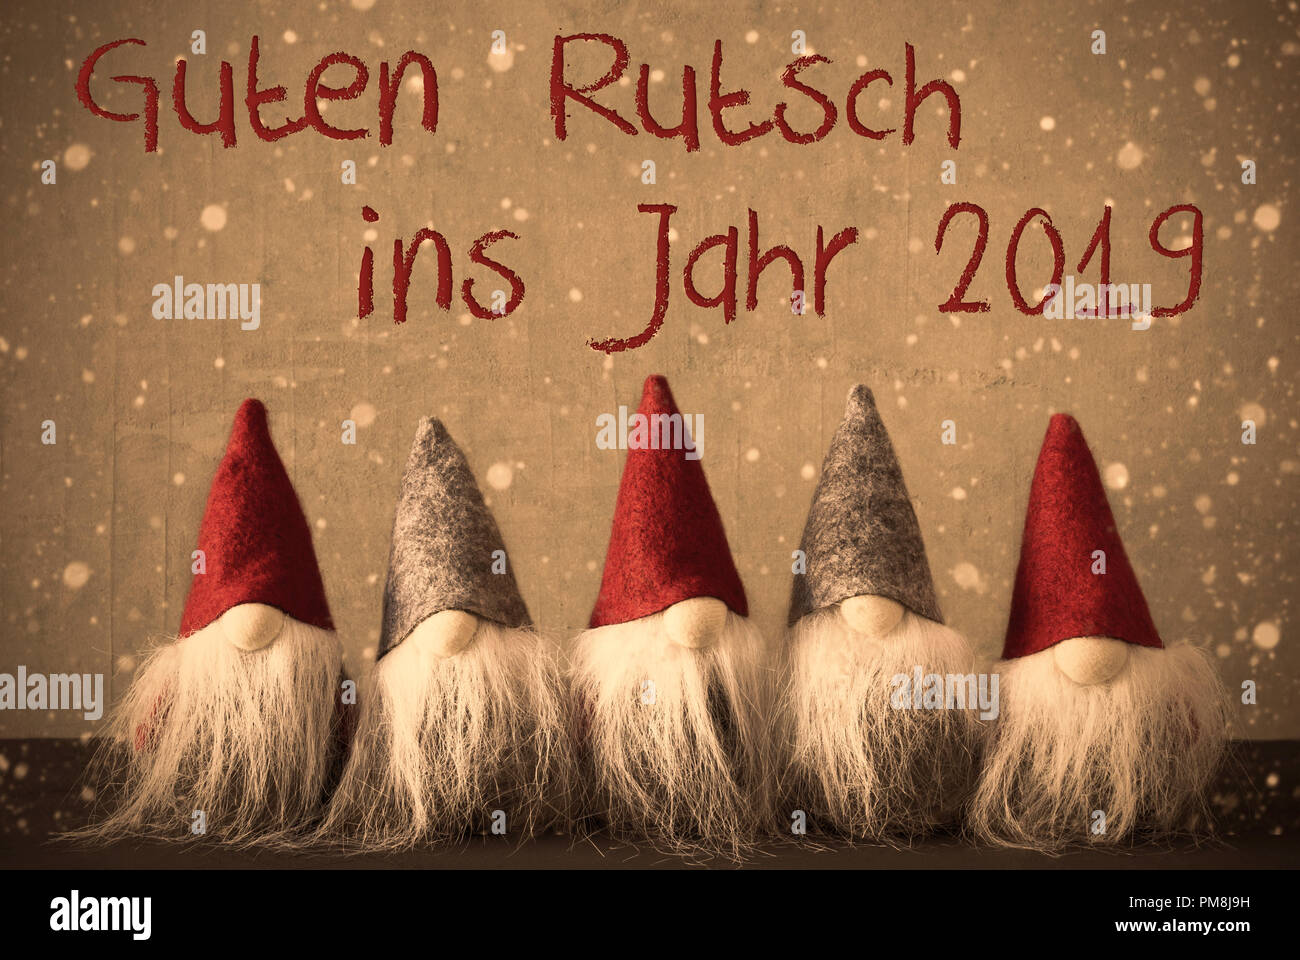 Avec l'Allemand Guten Rutsch Gnomes Ins Jarh signifie Bonne année 2019. Arrière-plan avec des flocons et filtre avec style rétro. Banque D'Images